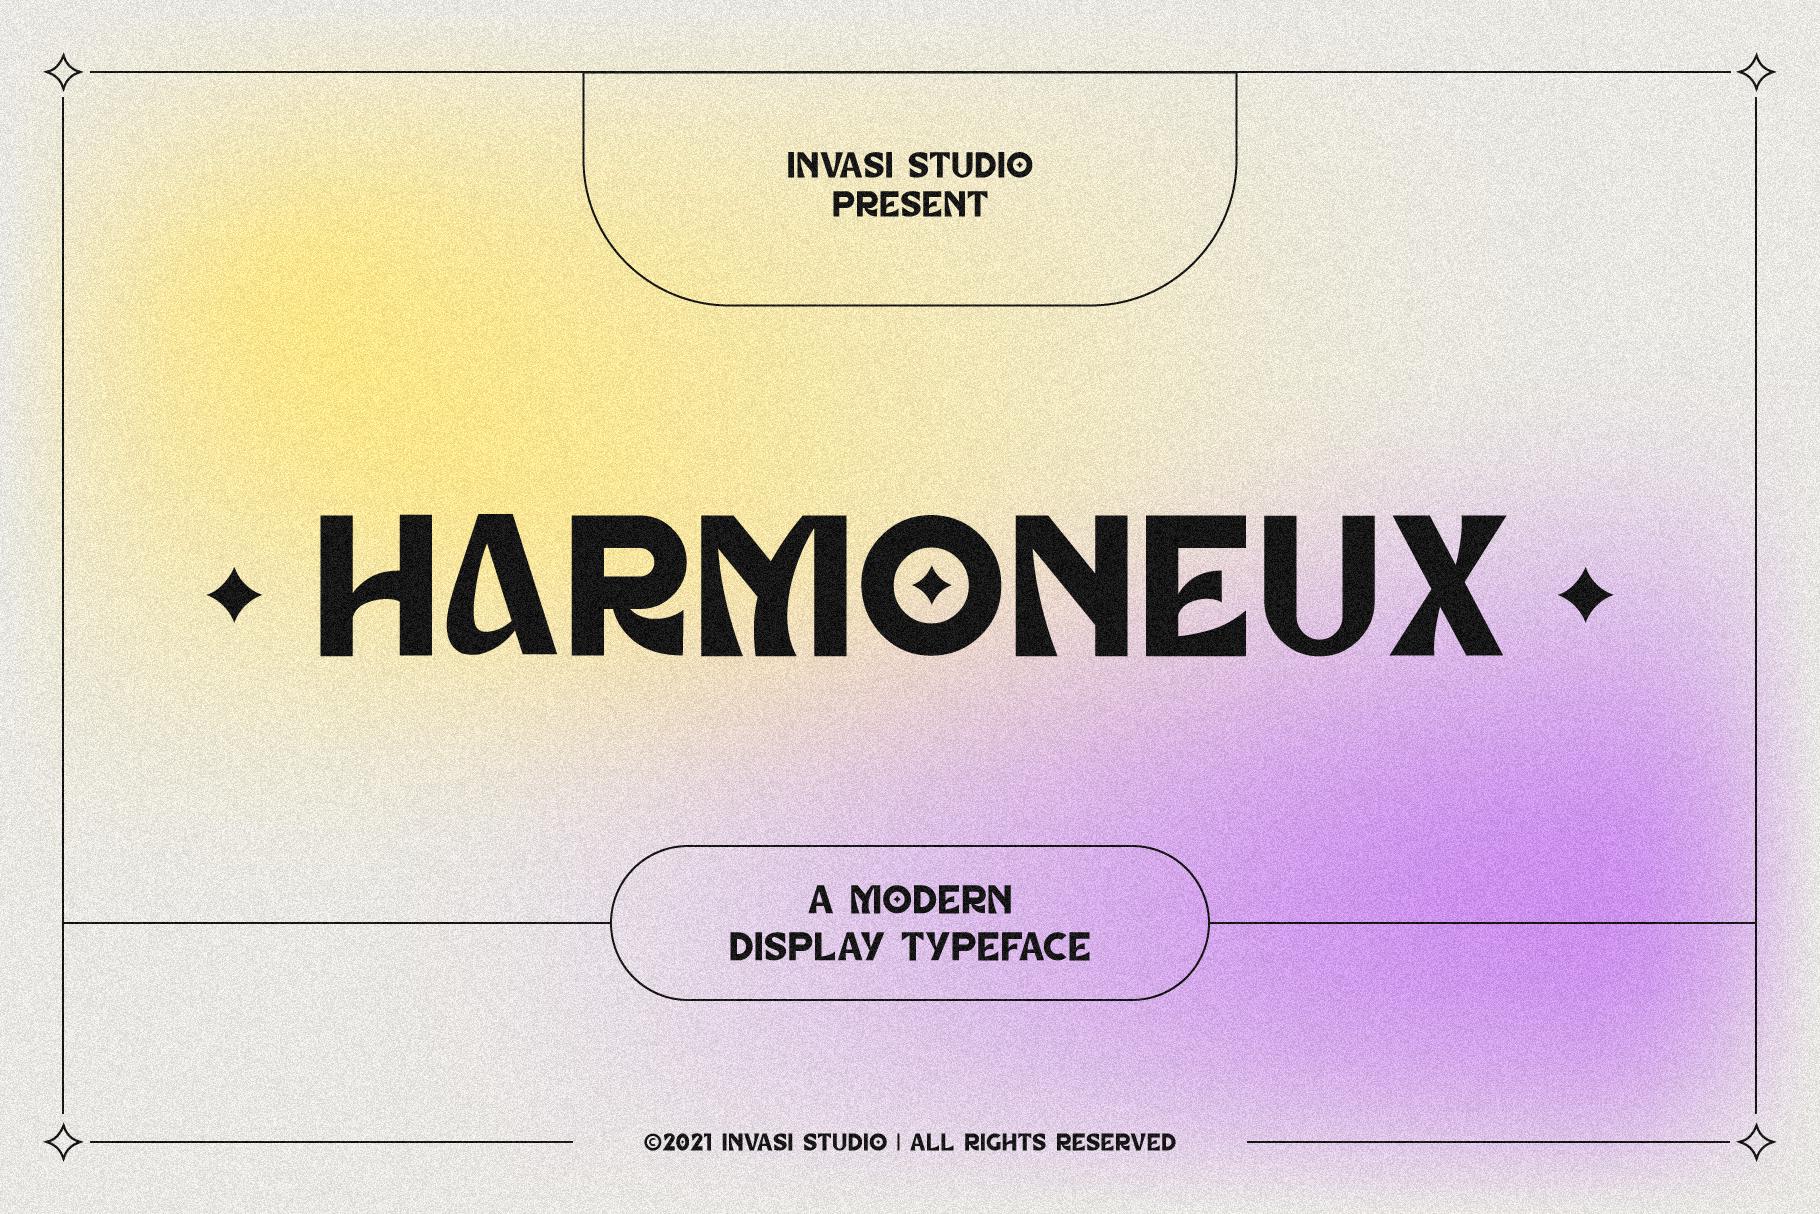 Harmoneux Font